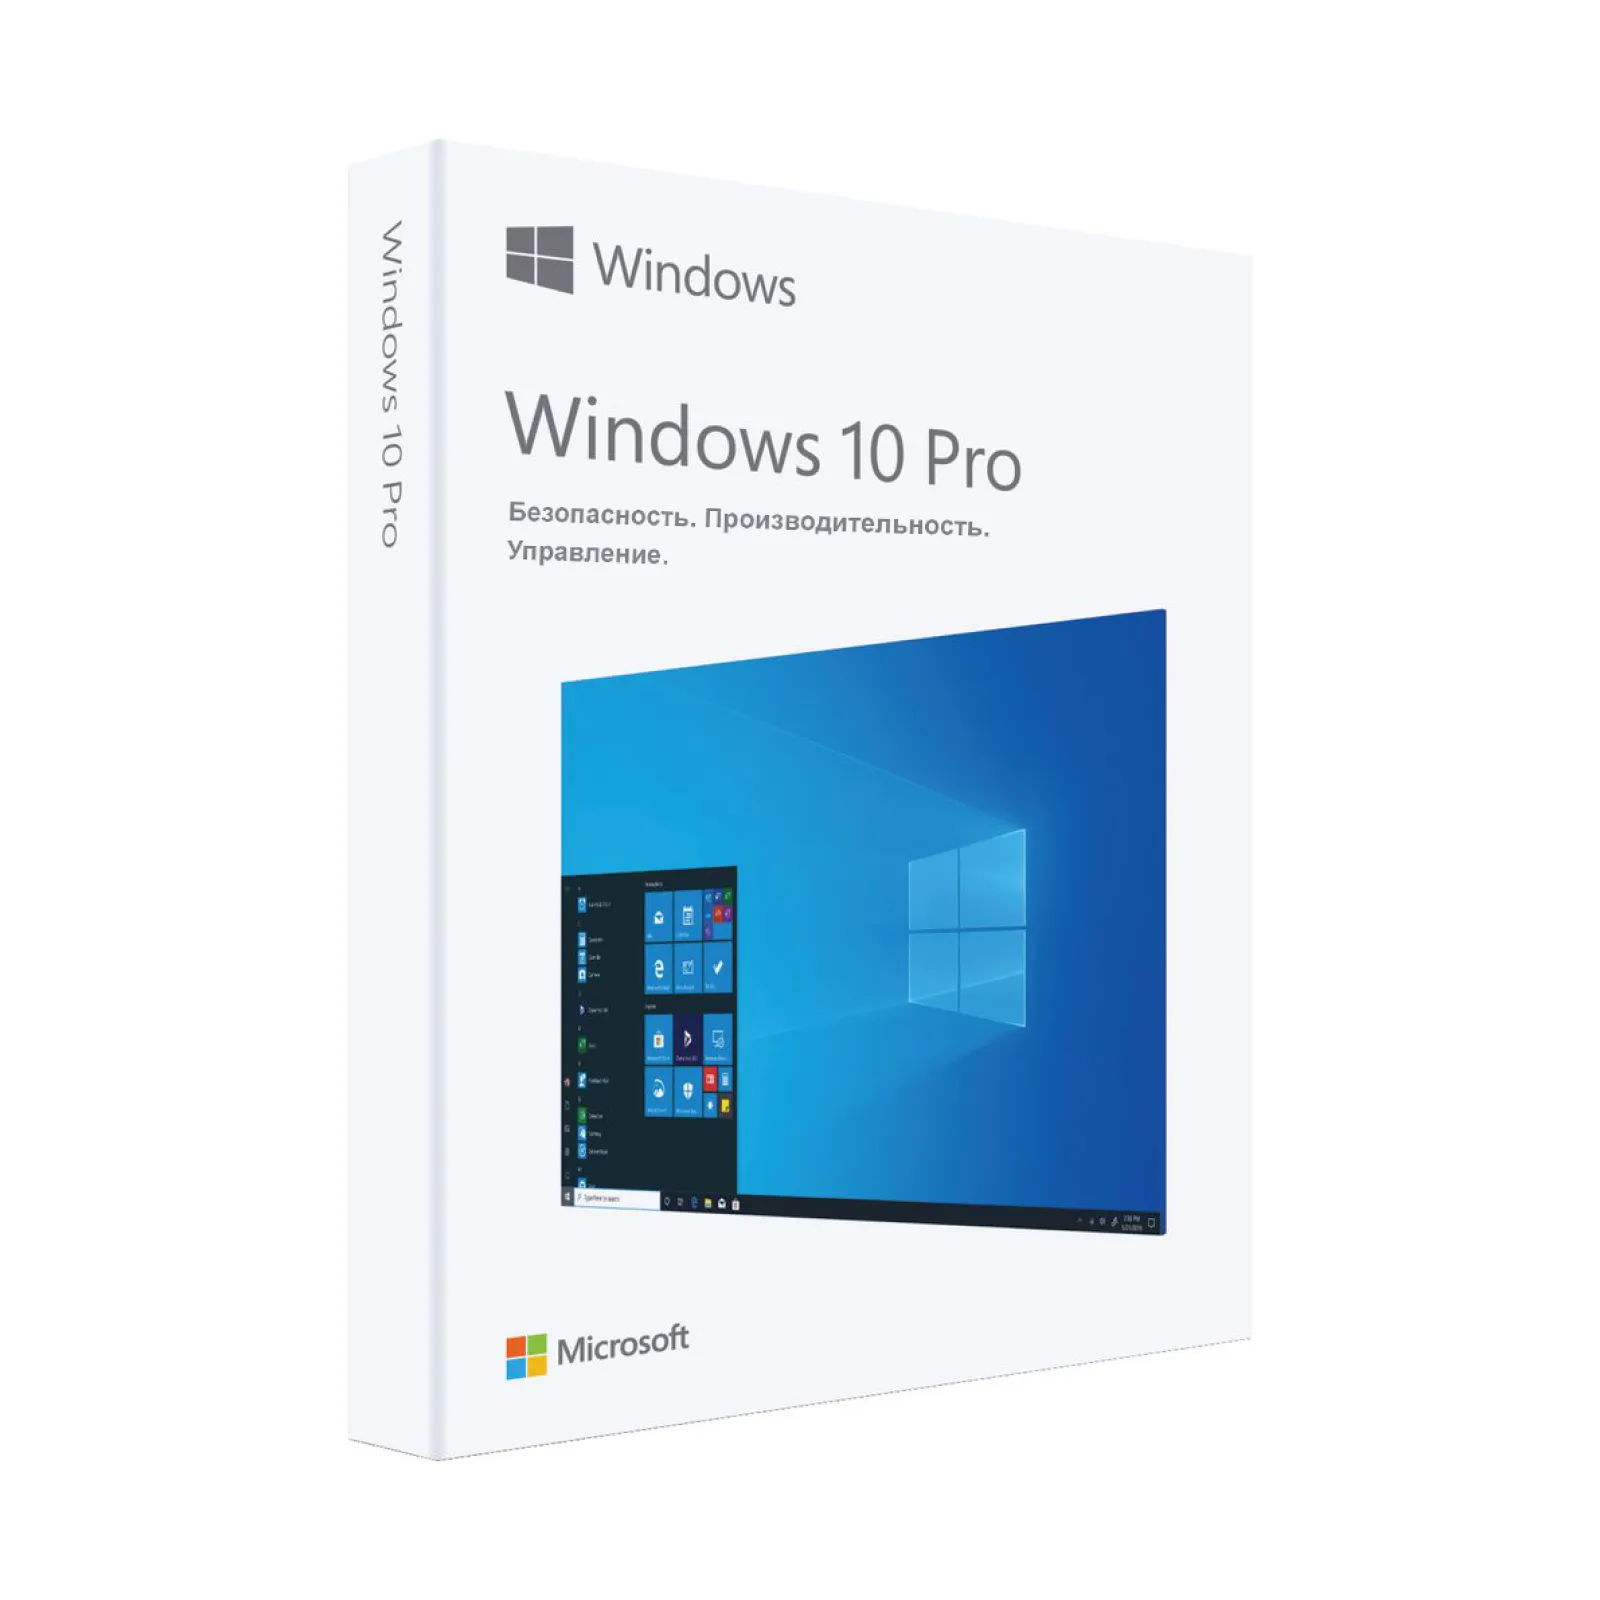 Windows 10 PRO (Professional)  uchun doimiy litsenziya faollashtirish kaliti#1